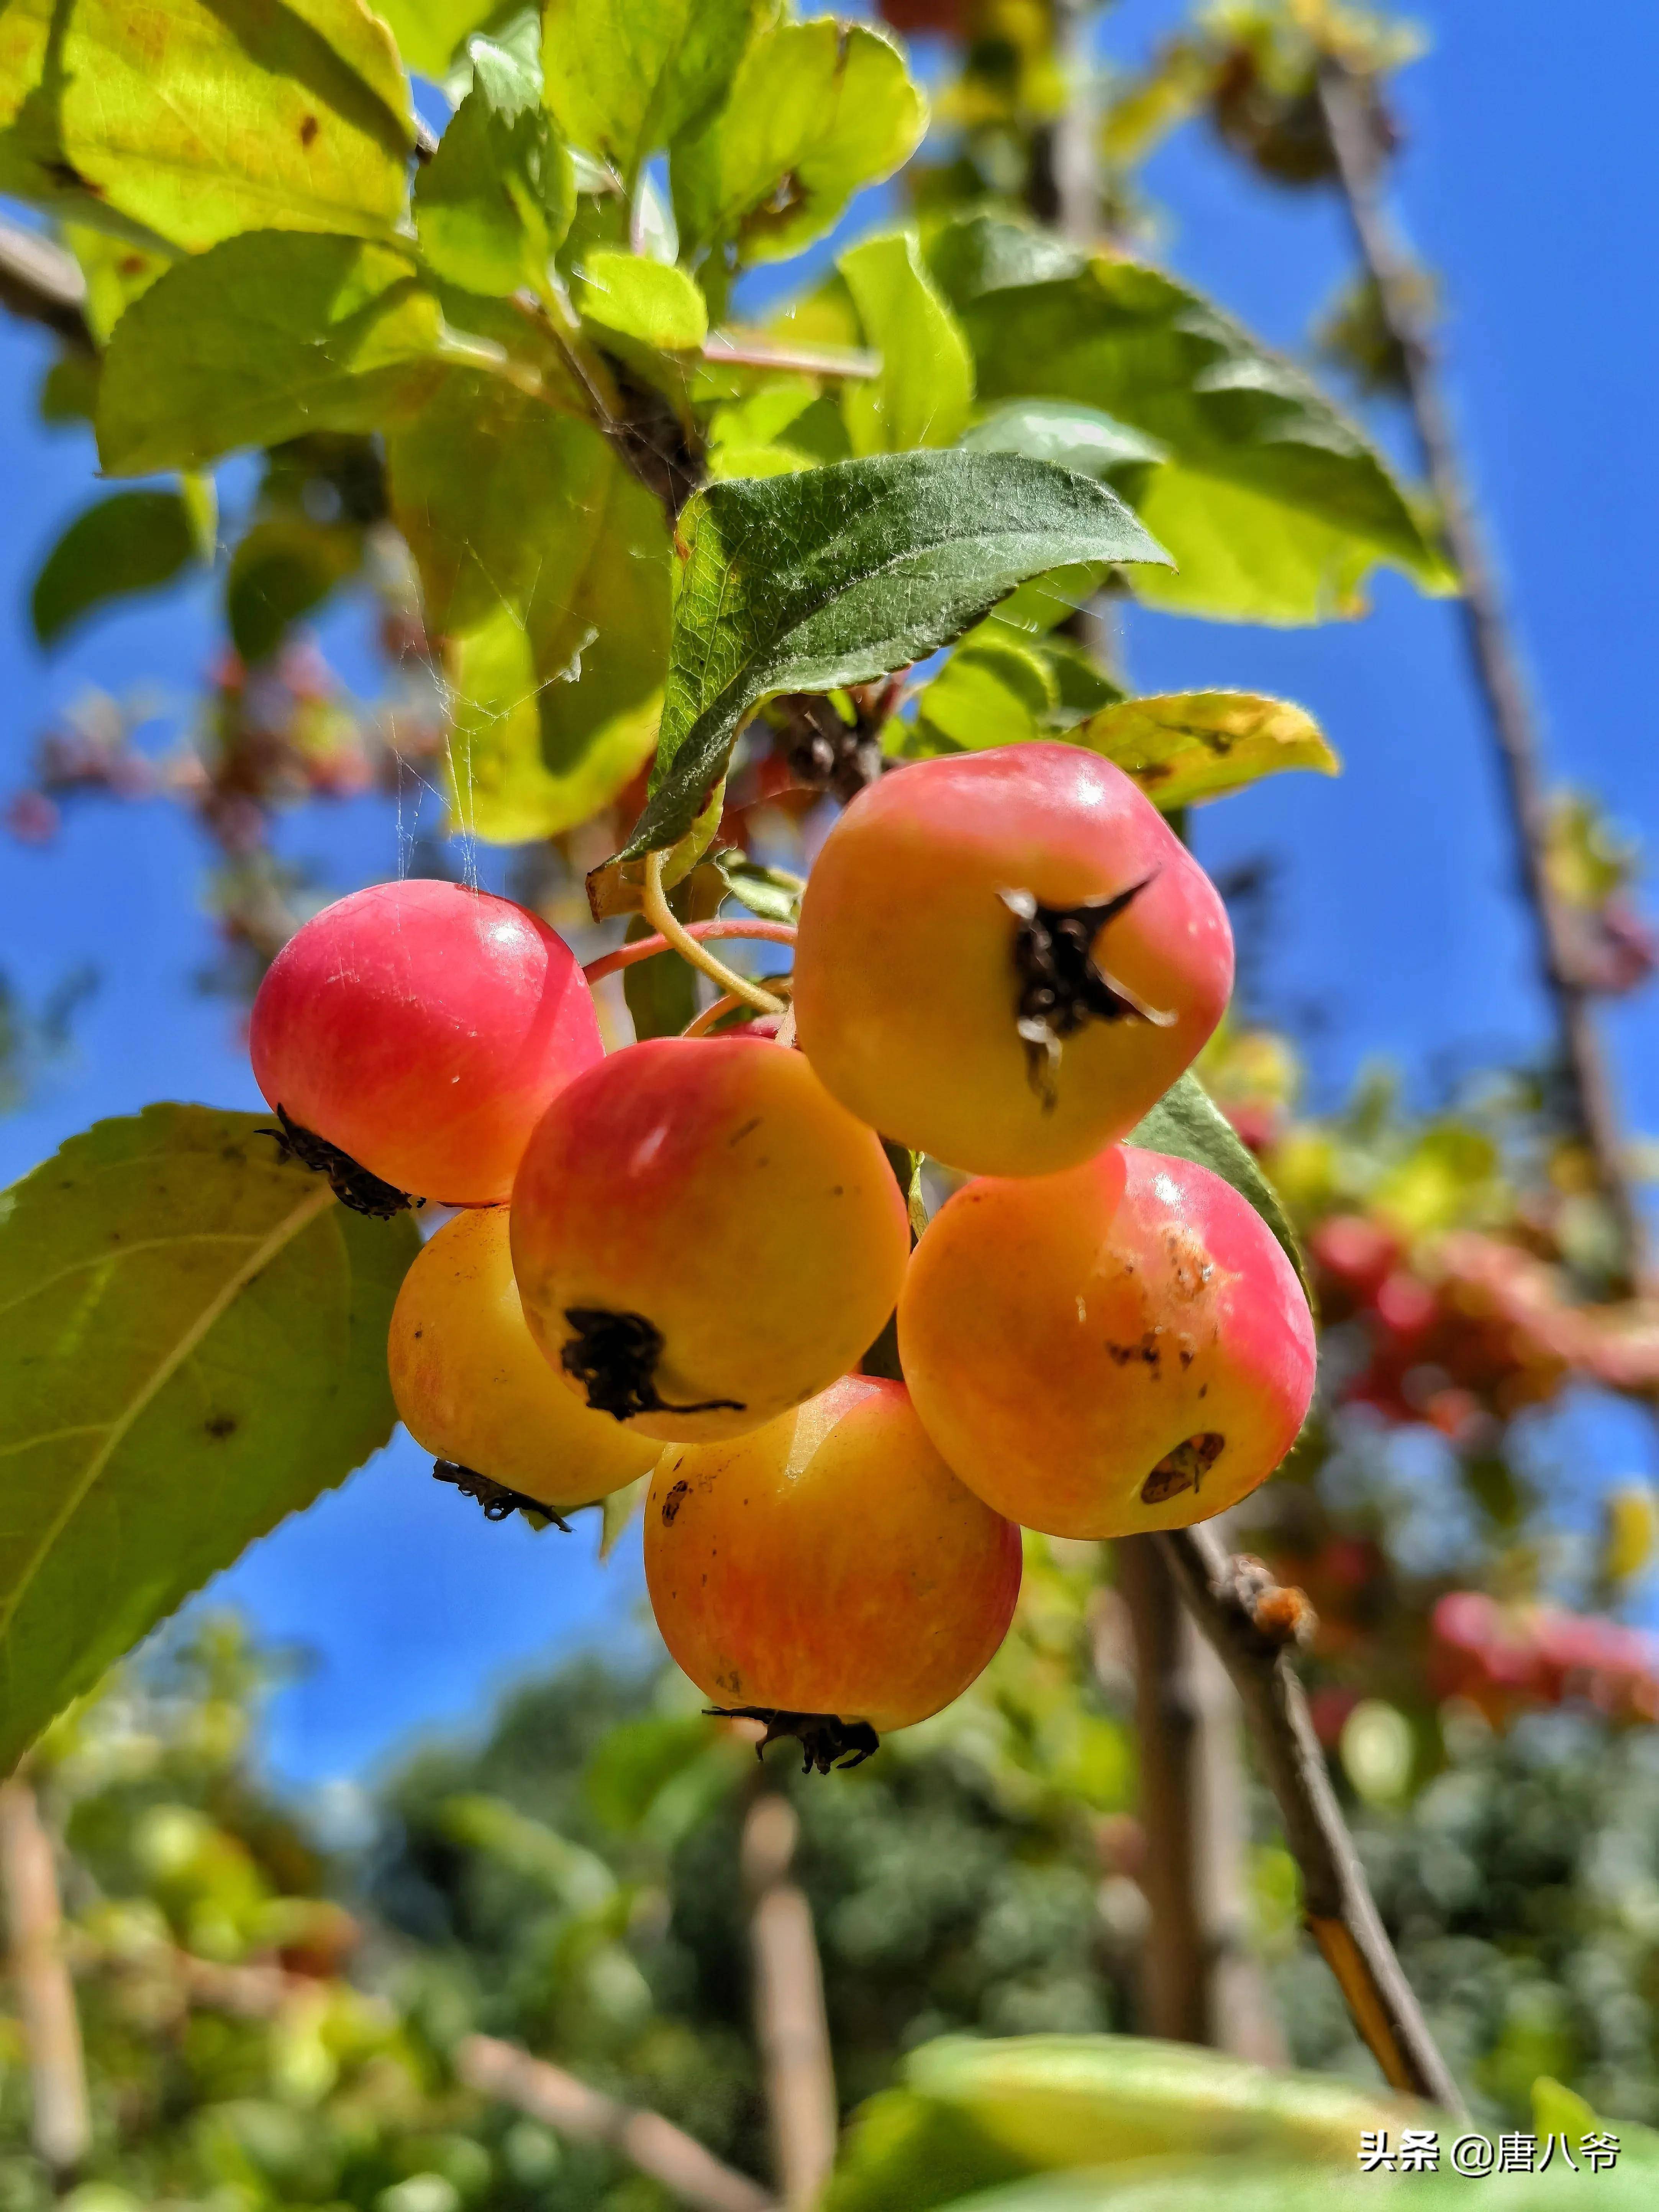 秋天到了果园里一片丰收在望的景象饱满的果实挂满枝头